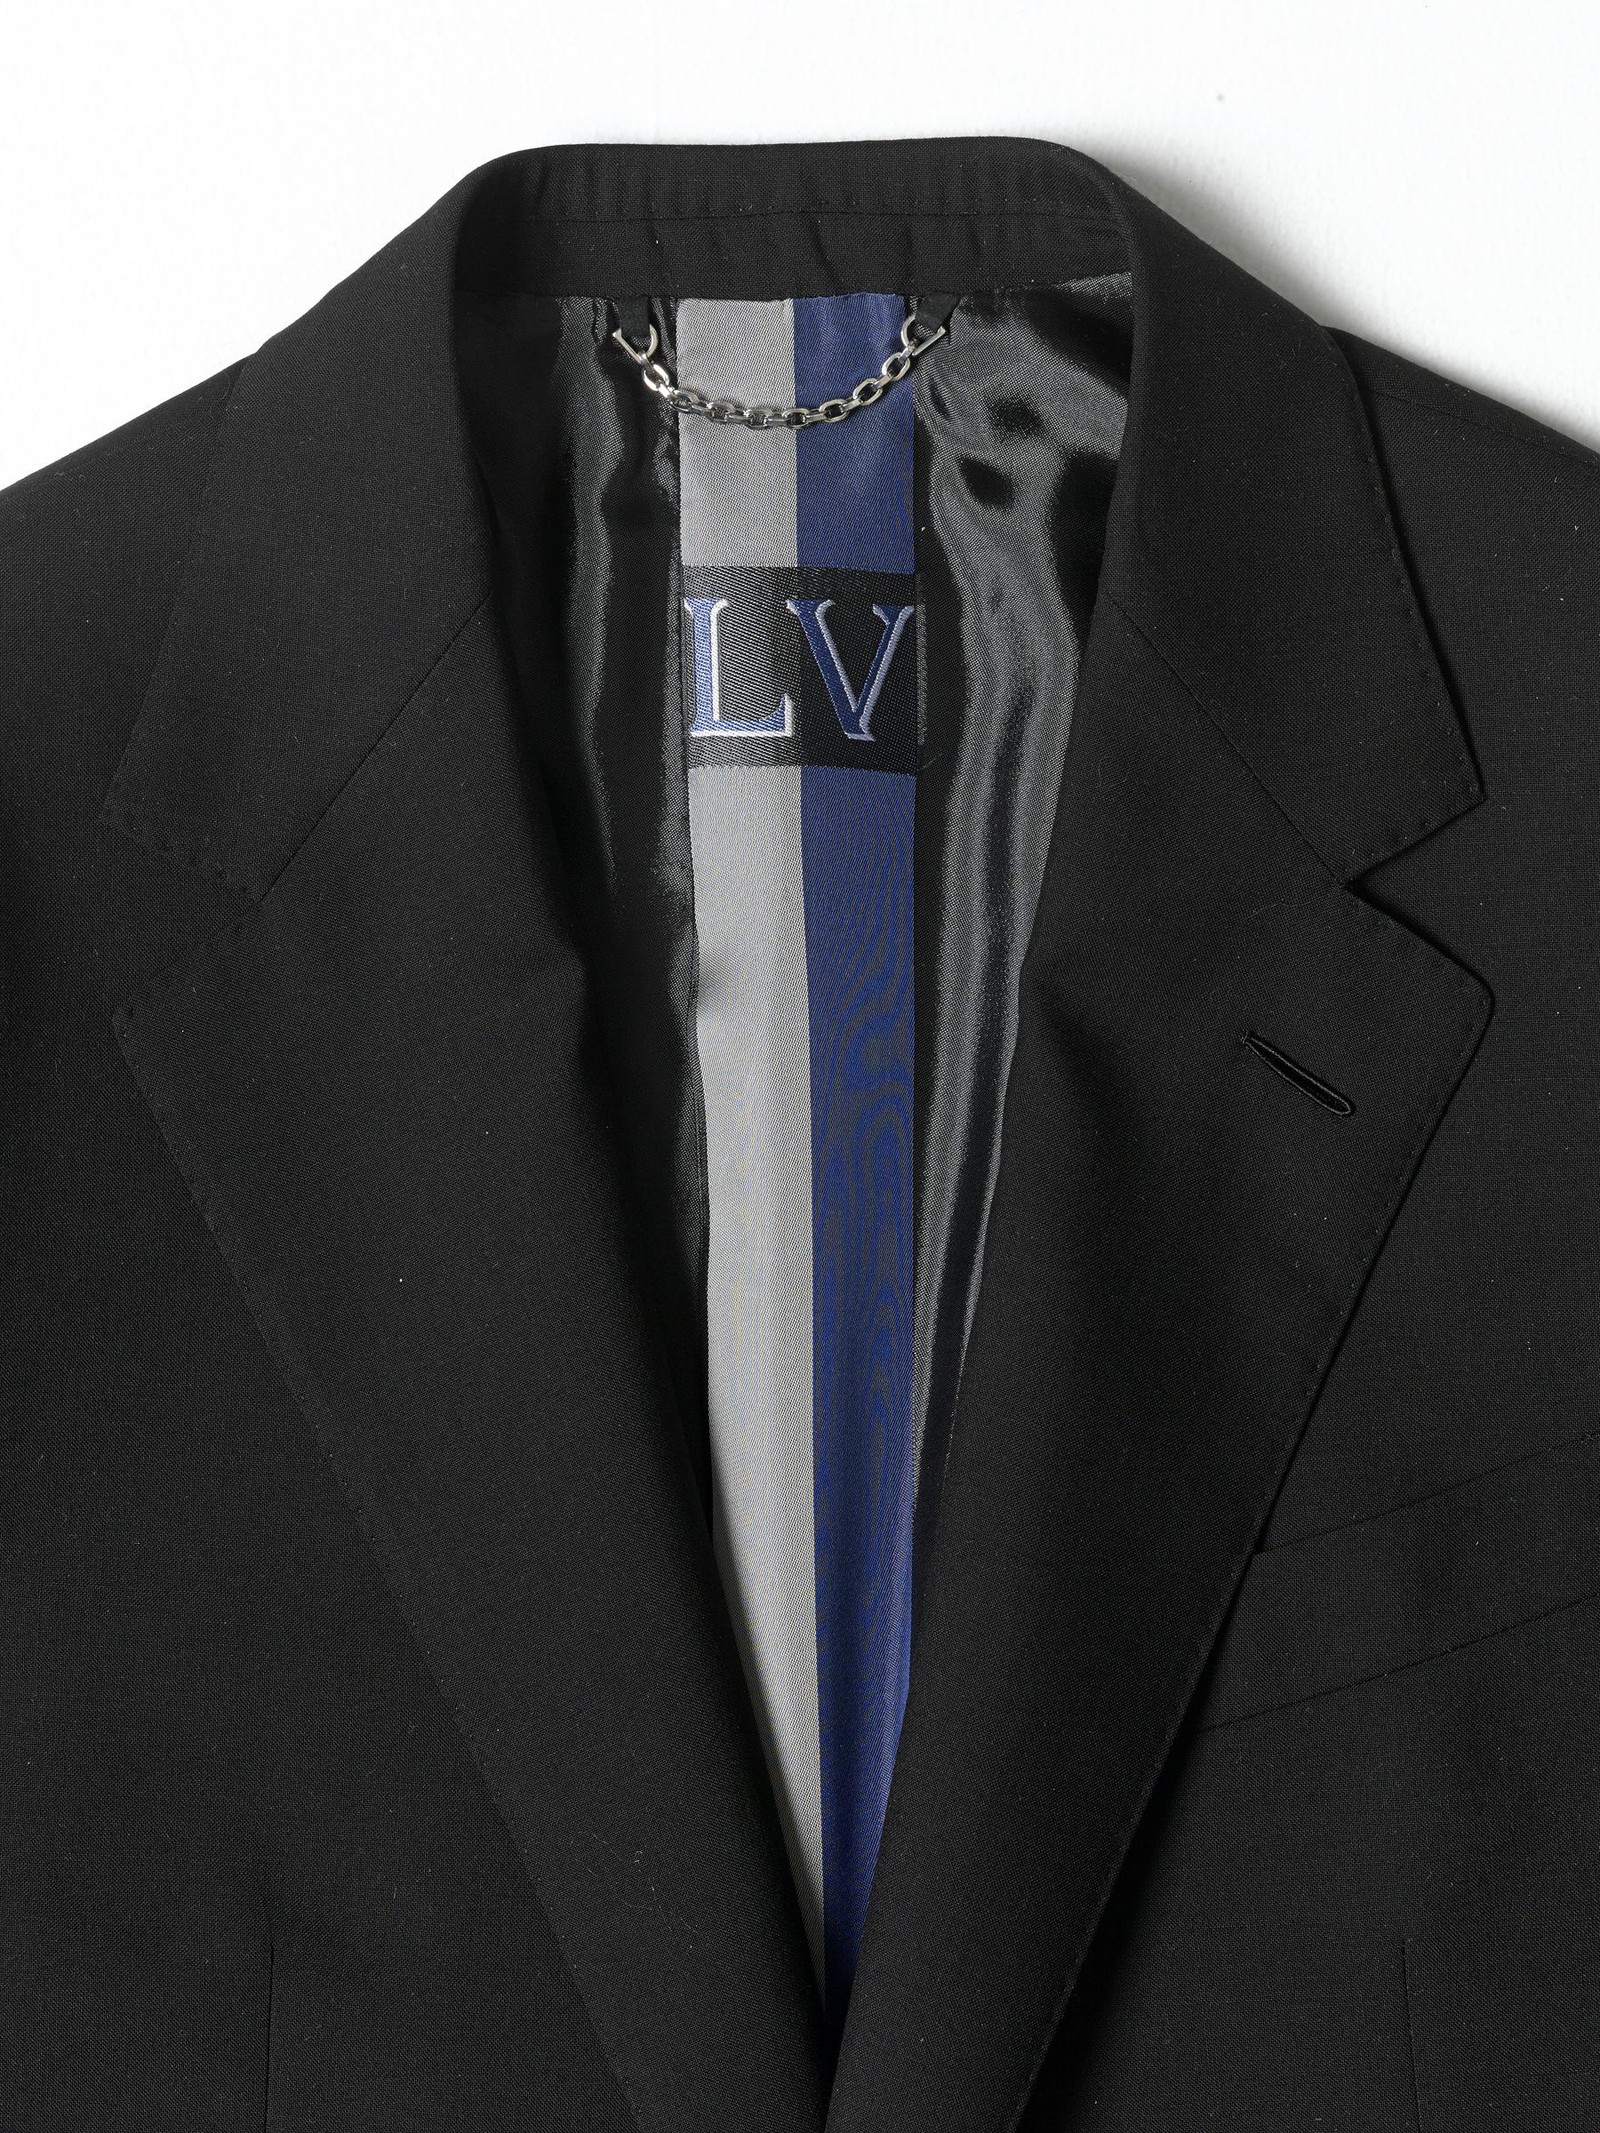 ルイ・ヴィトンの極上スーツは、オン・オフの自在っぷりも最高峰 ...